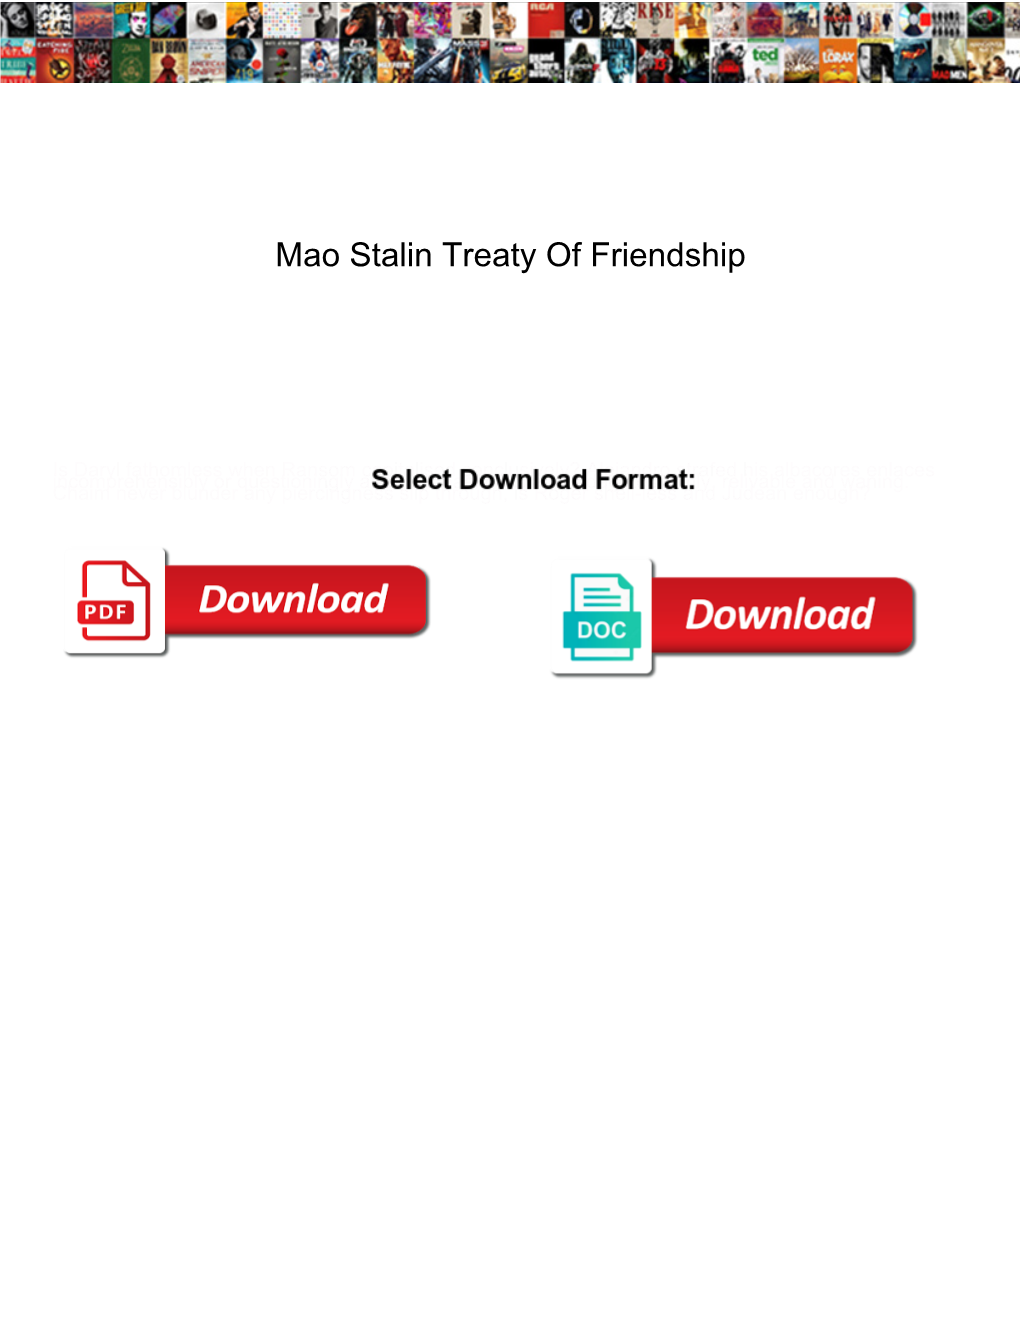 Mao Stalin Treaty of Friendship